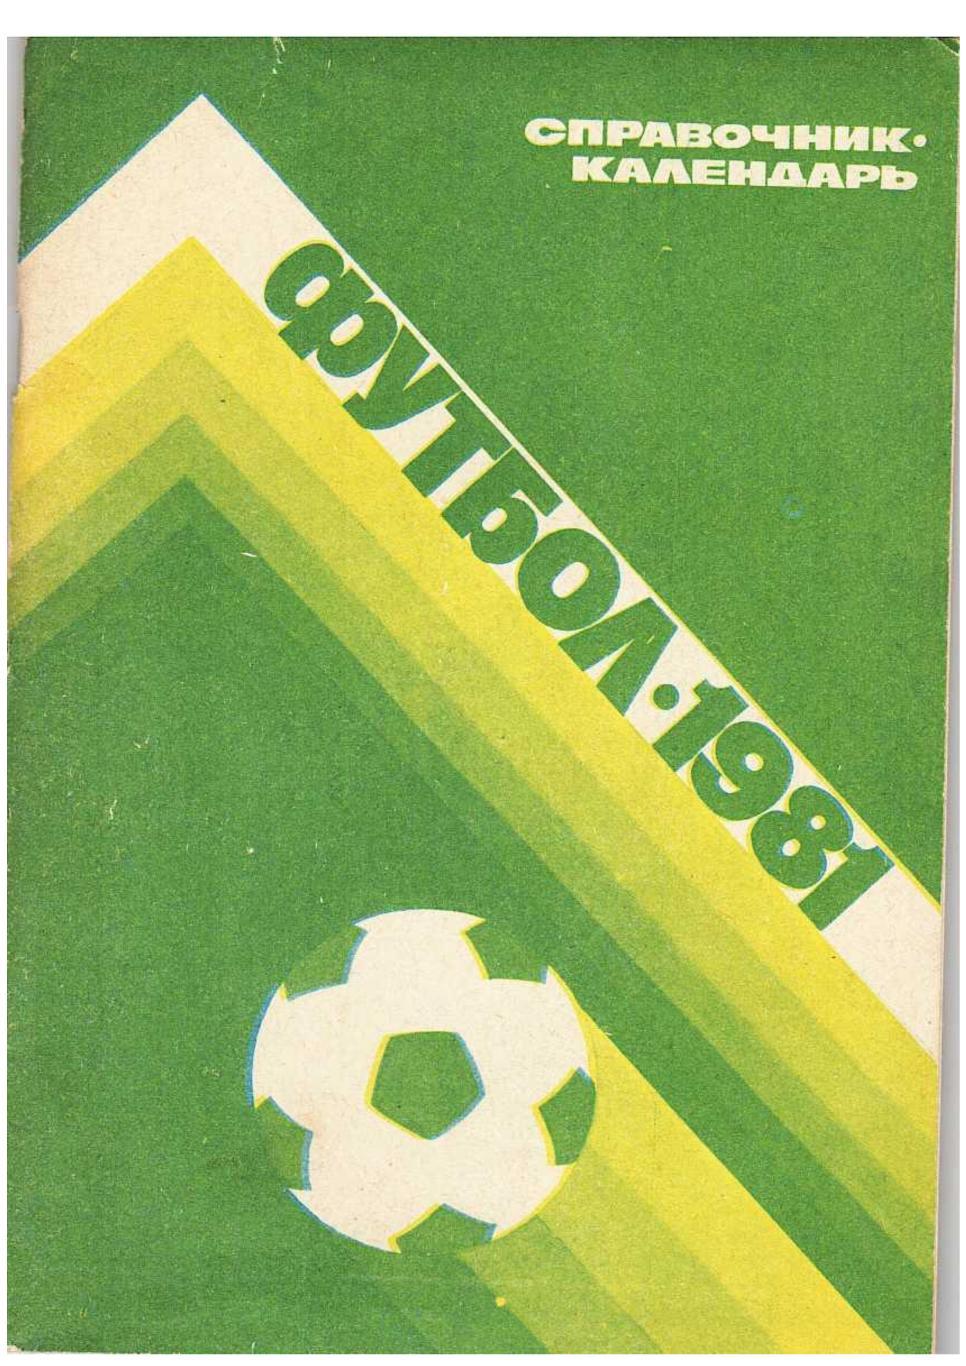 Футбол 1981. Справочник-календарь. Москва 1981.